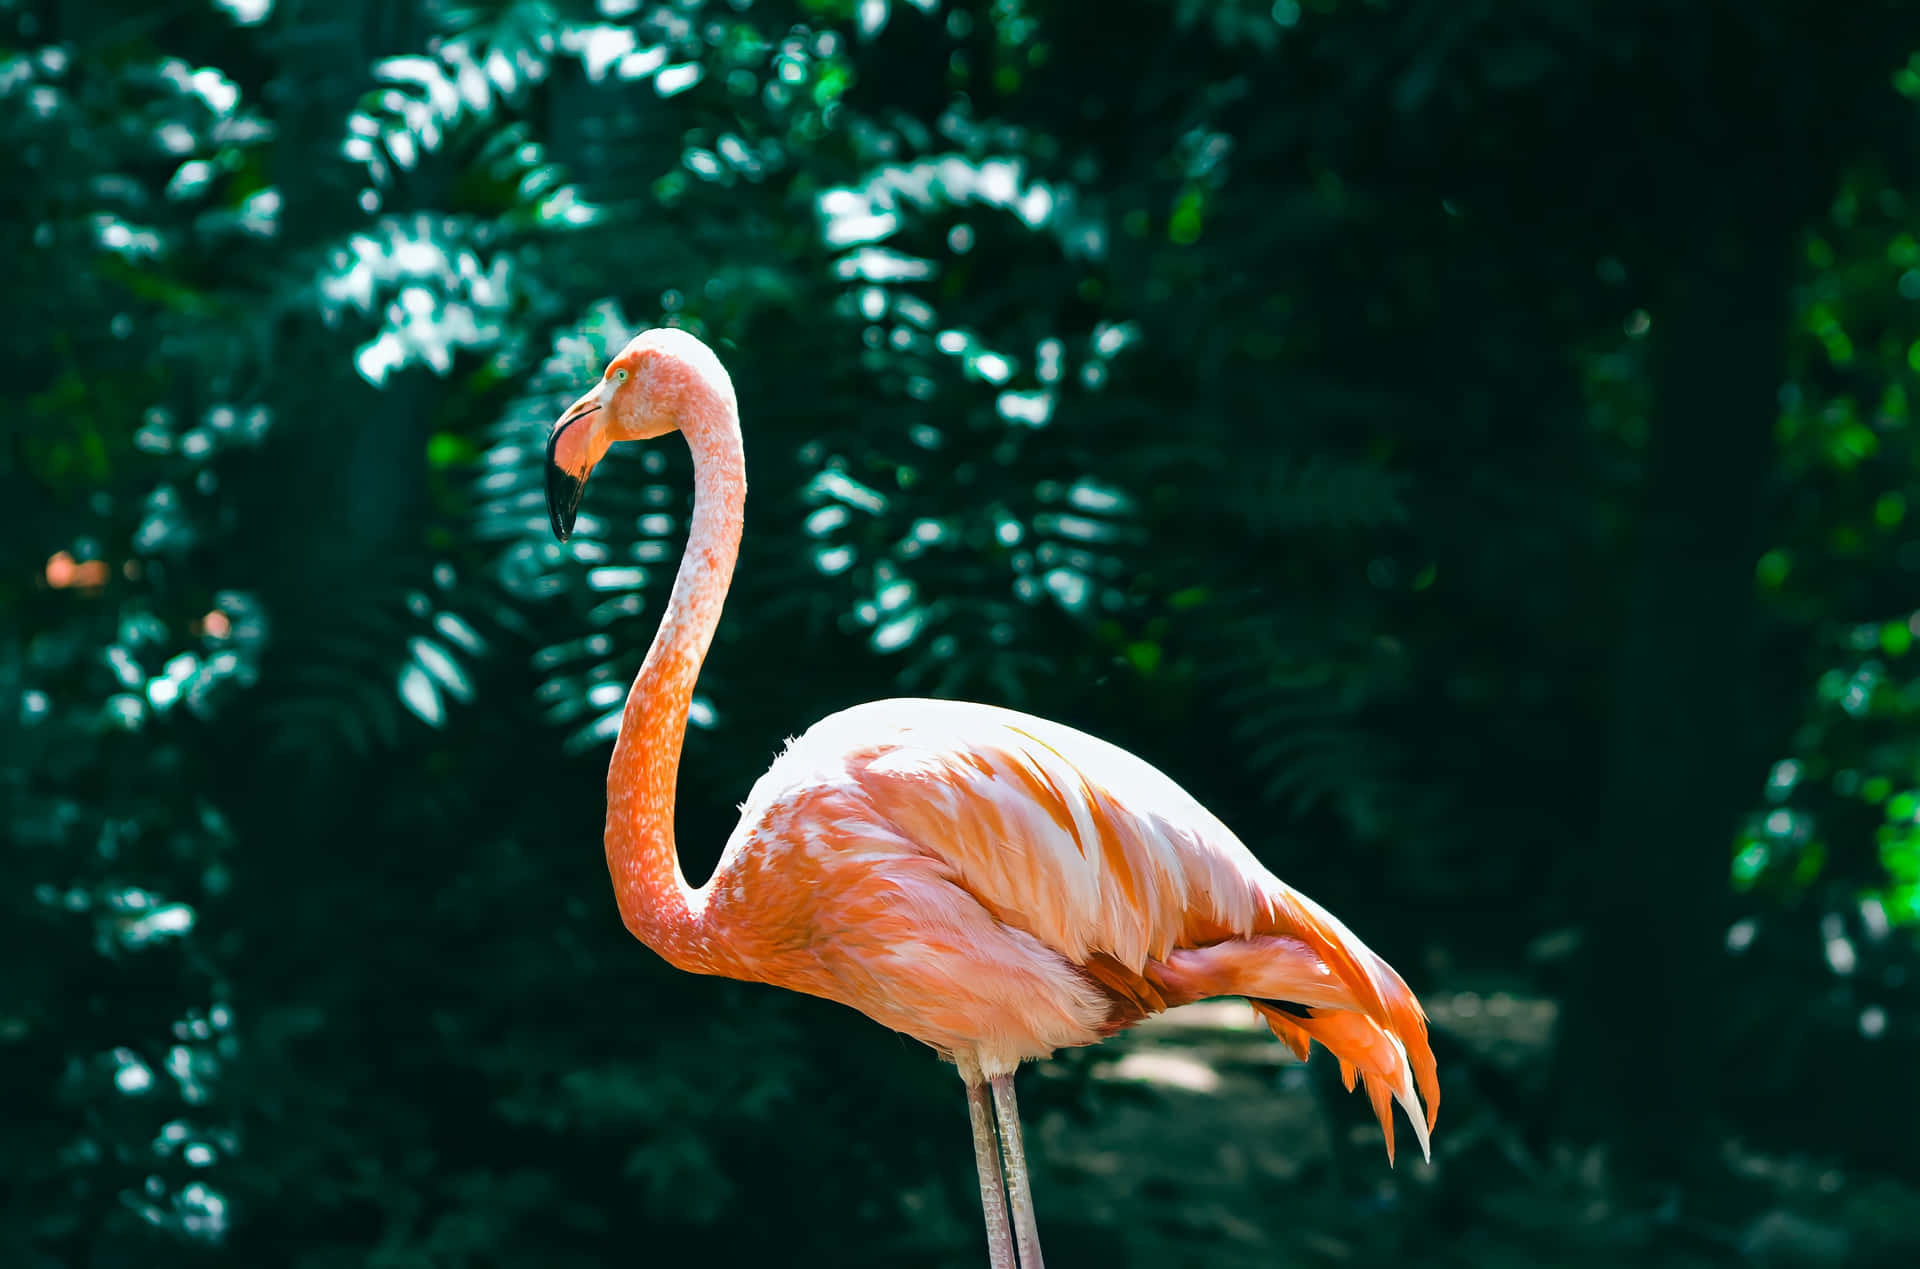 Säghej Till Sommaren Med En Färgstark Flamingo-bakgrund!